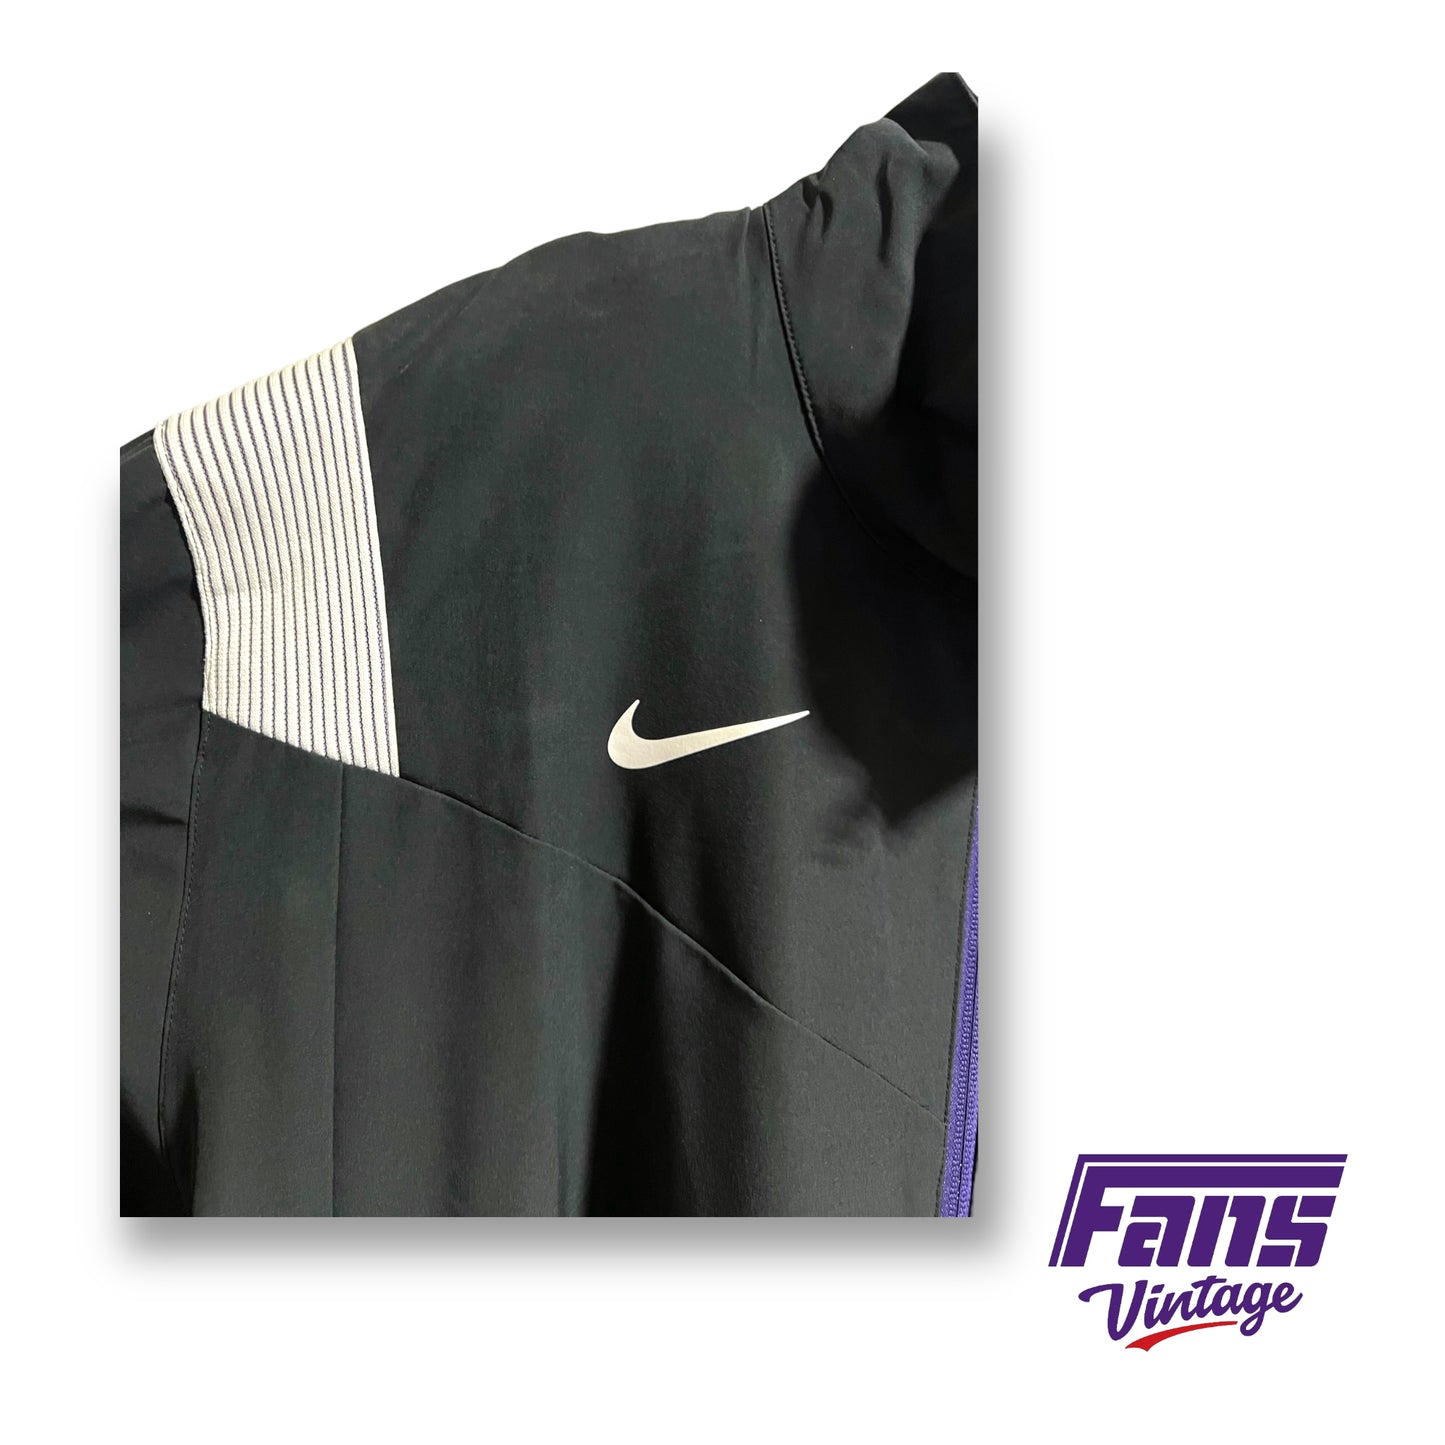 Nike TCU team issued premium lightweight jacket